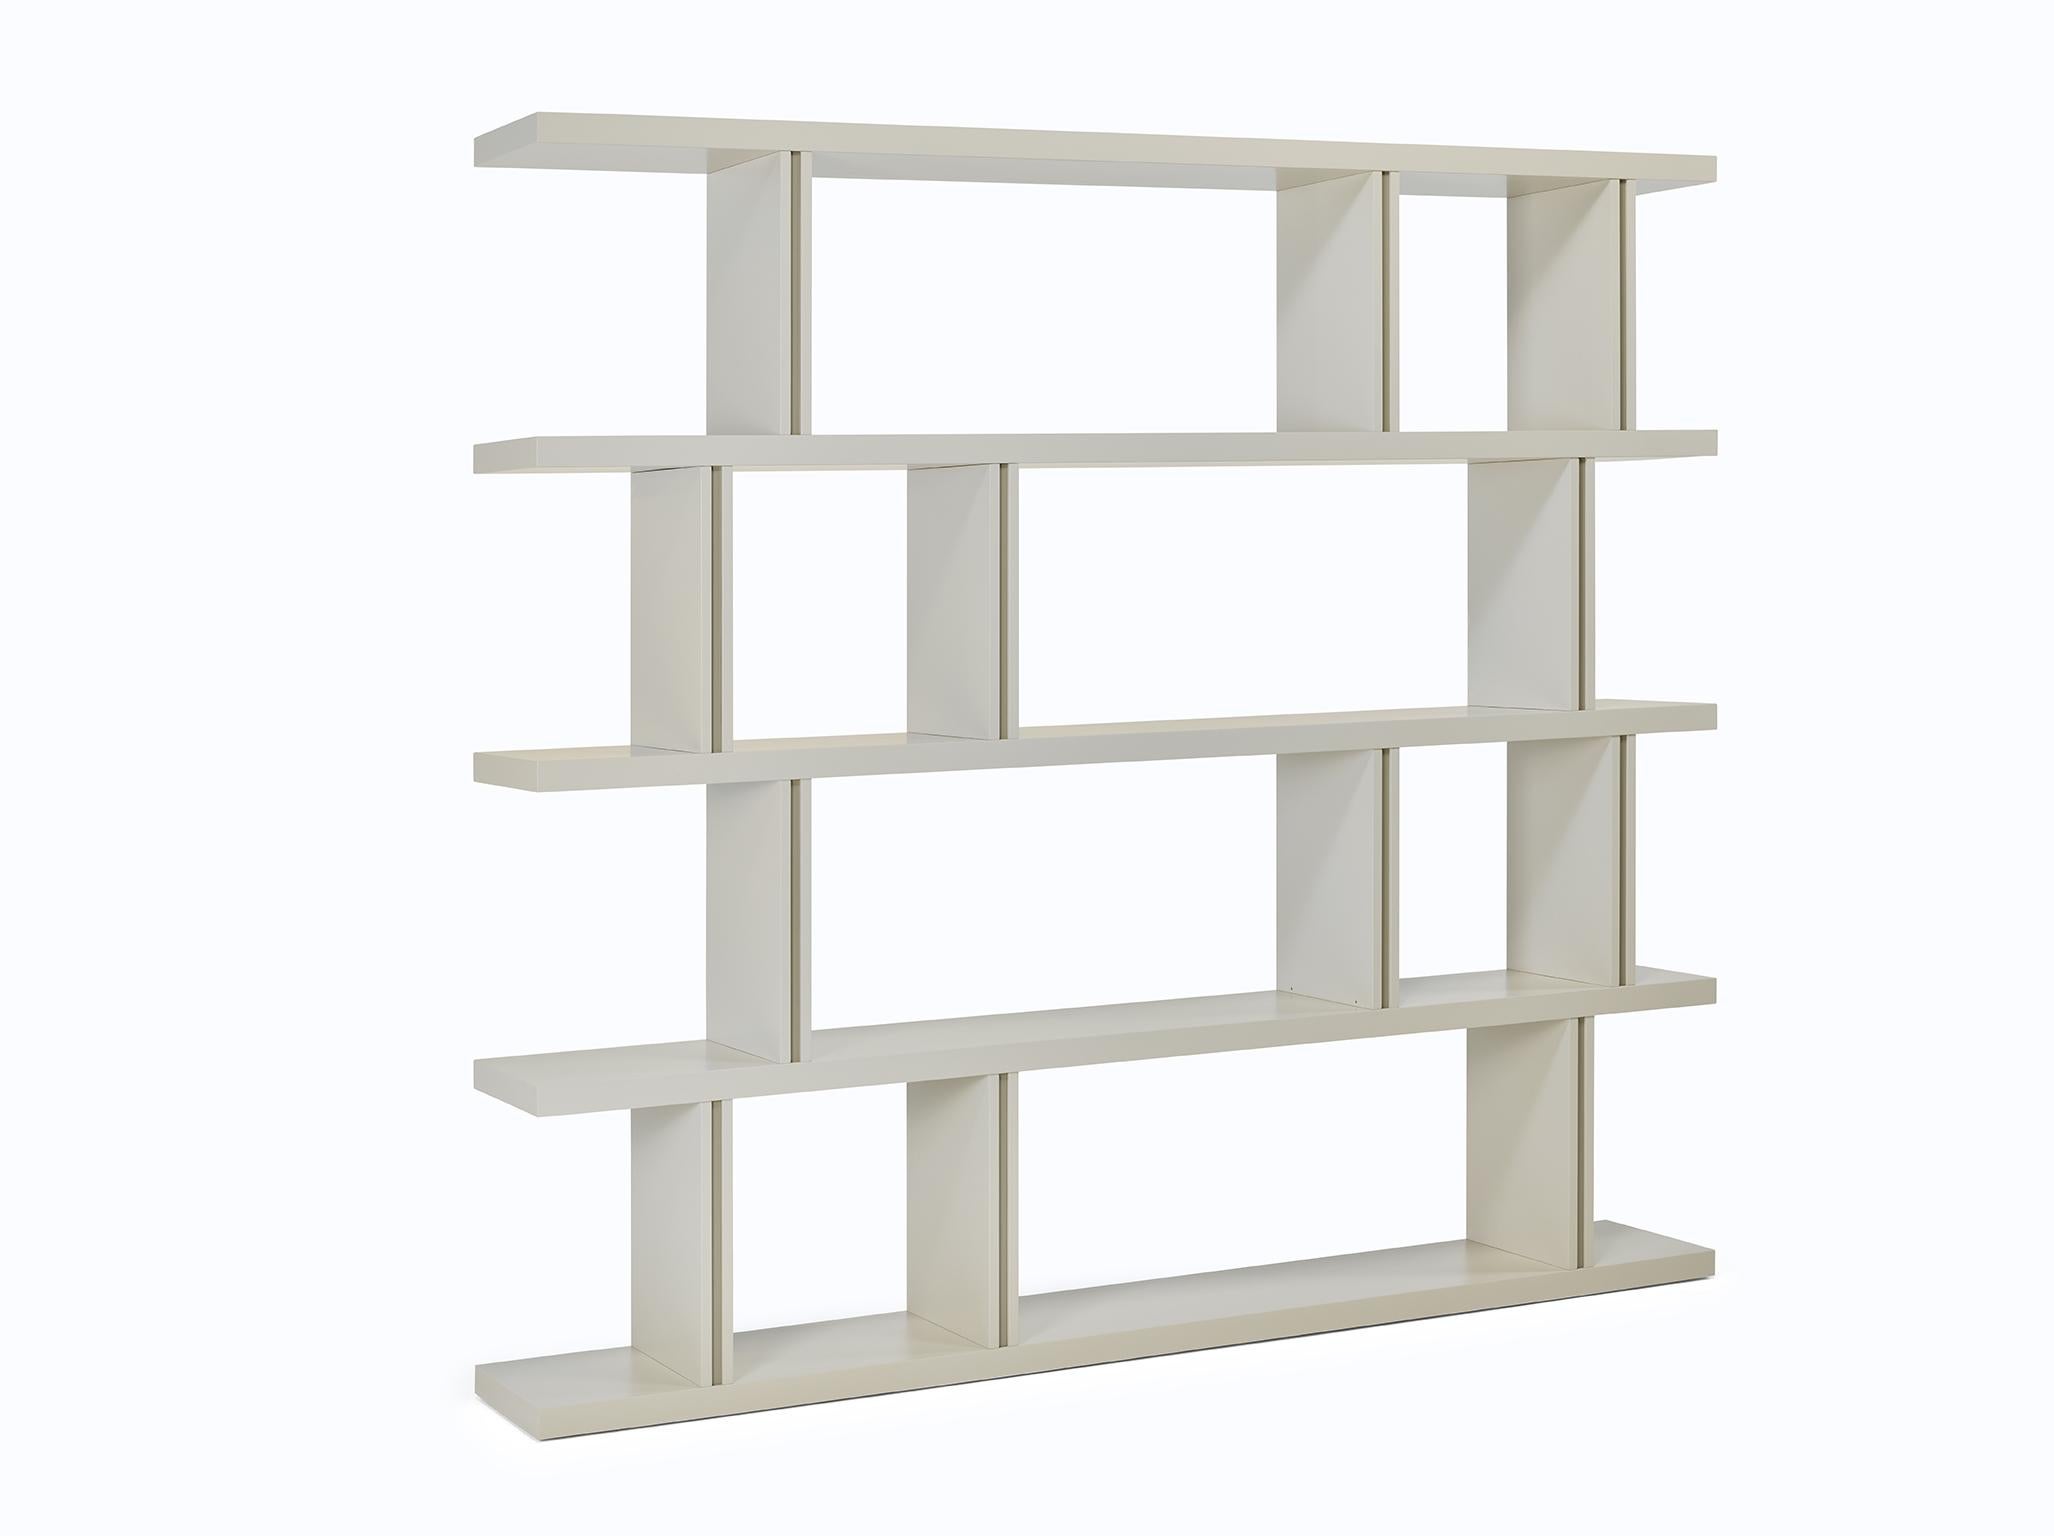 La bibliothèque polyvalente Nobre peut être utilisée au mur ou comme séparateur de pièces. Fabriqué en bois massif, Nobre est disponible dans n'importe quelle couleur de laque ou de bois plaqué.

Représenté laqué mat en couleur CM3 avec des détails